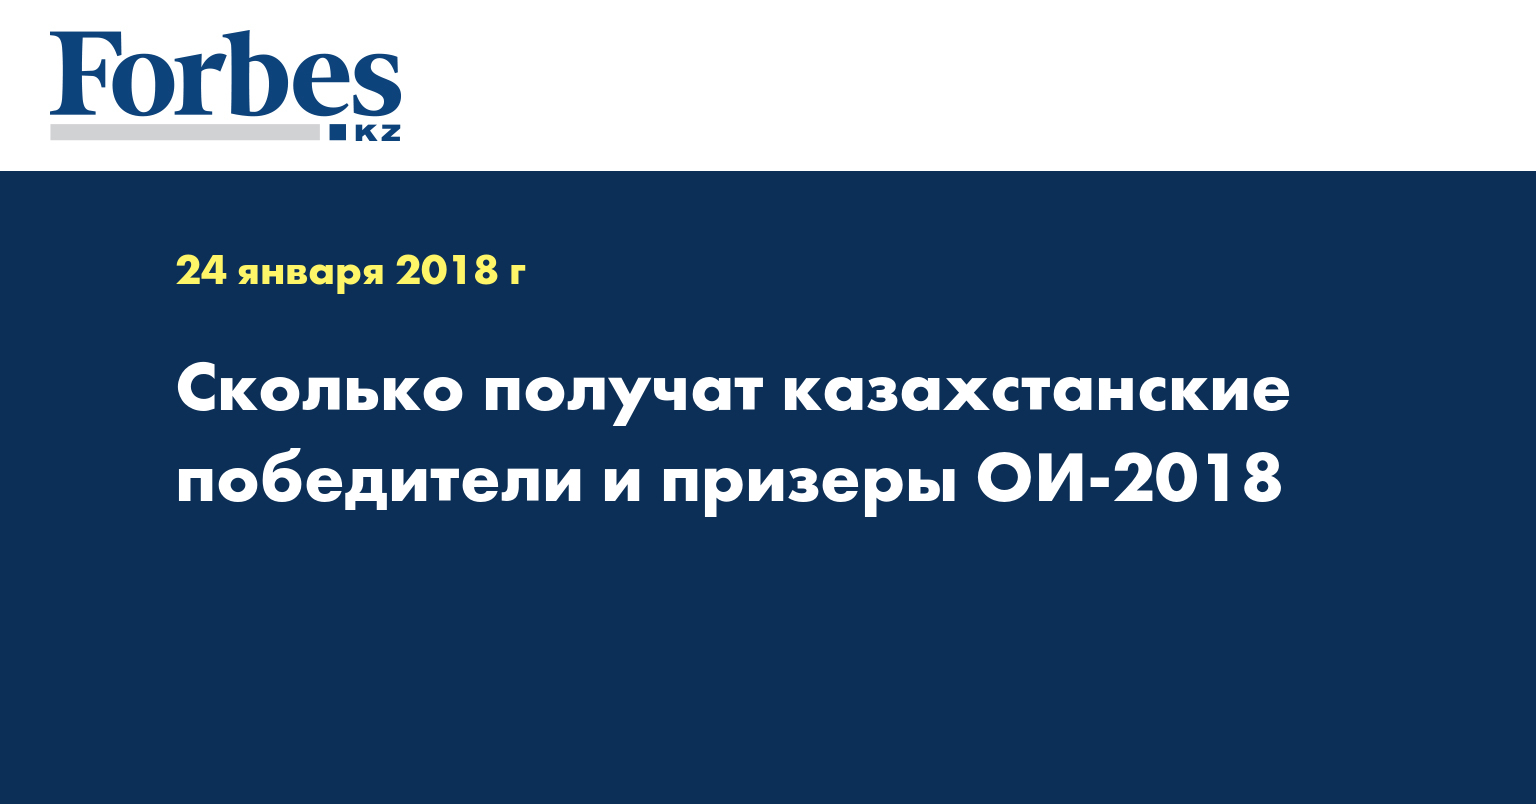 Сколько получат казахстанские победители и призеры ОИ-2018